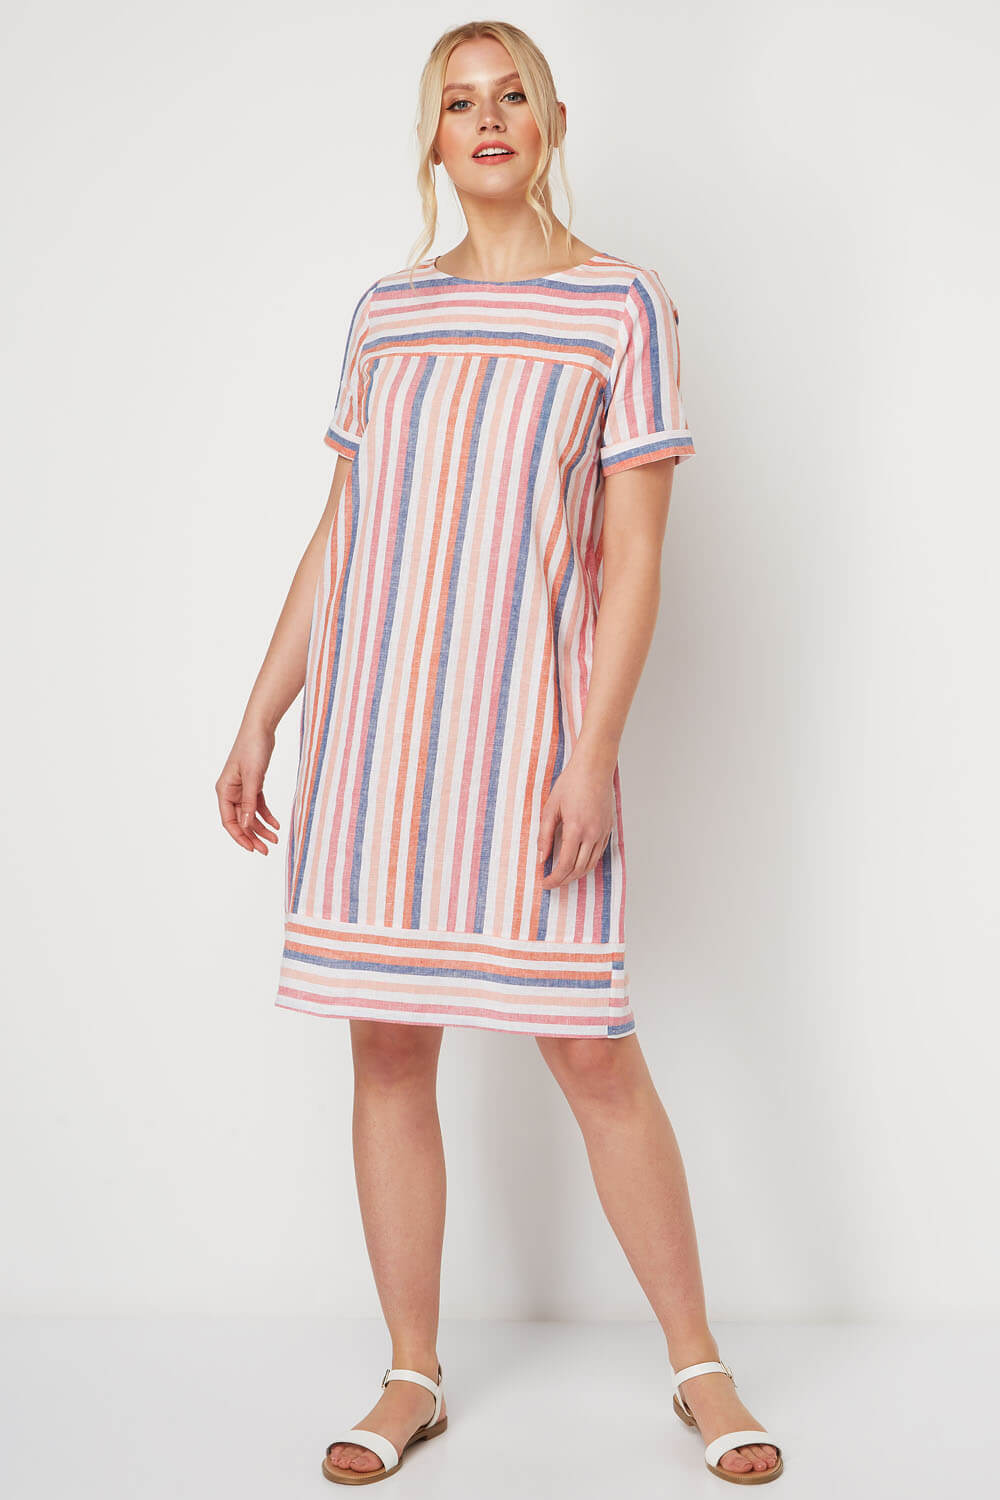 Multi Coloured Striped Linen Tunic, Image 2 of 5